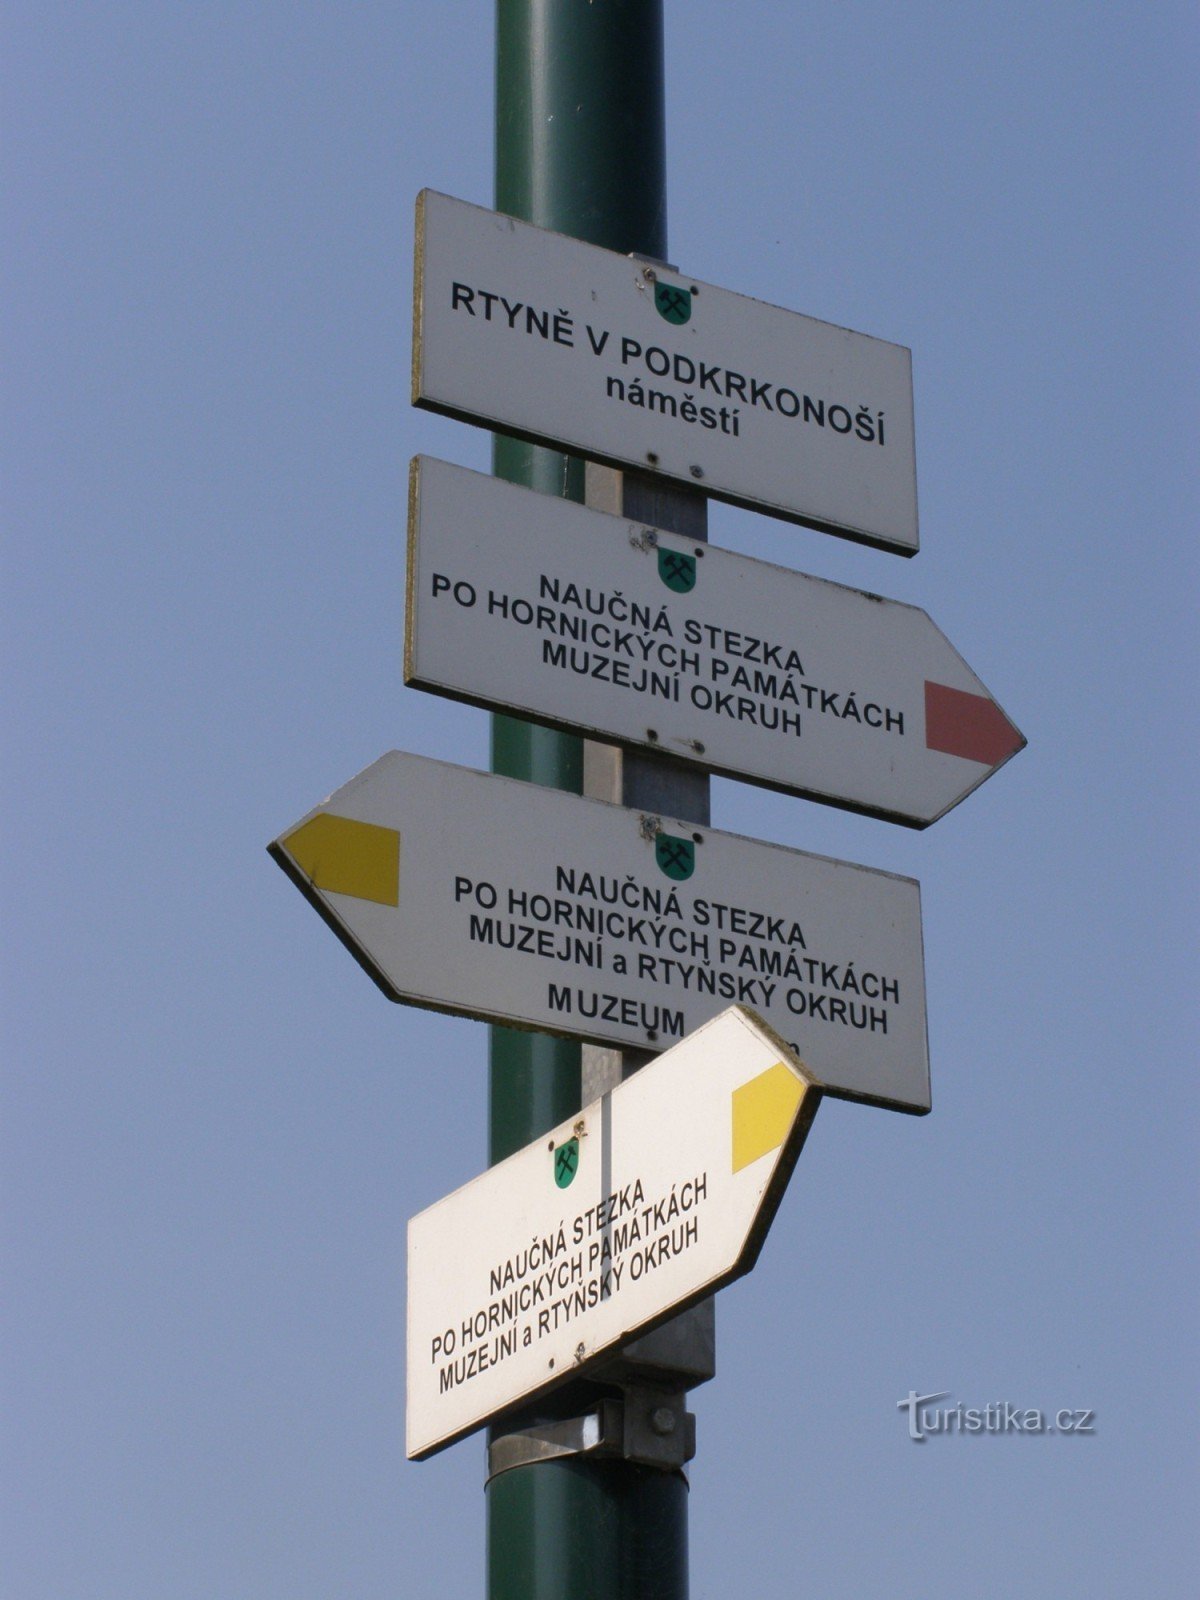 răscruce turistică Rtyně în Podkrkonoší - náměstí Horníků